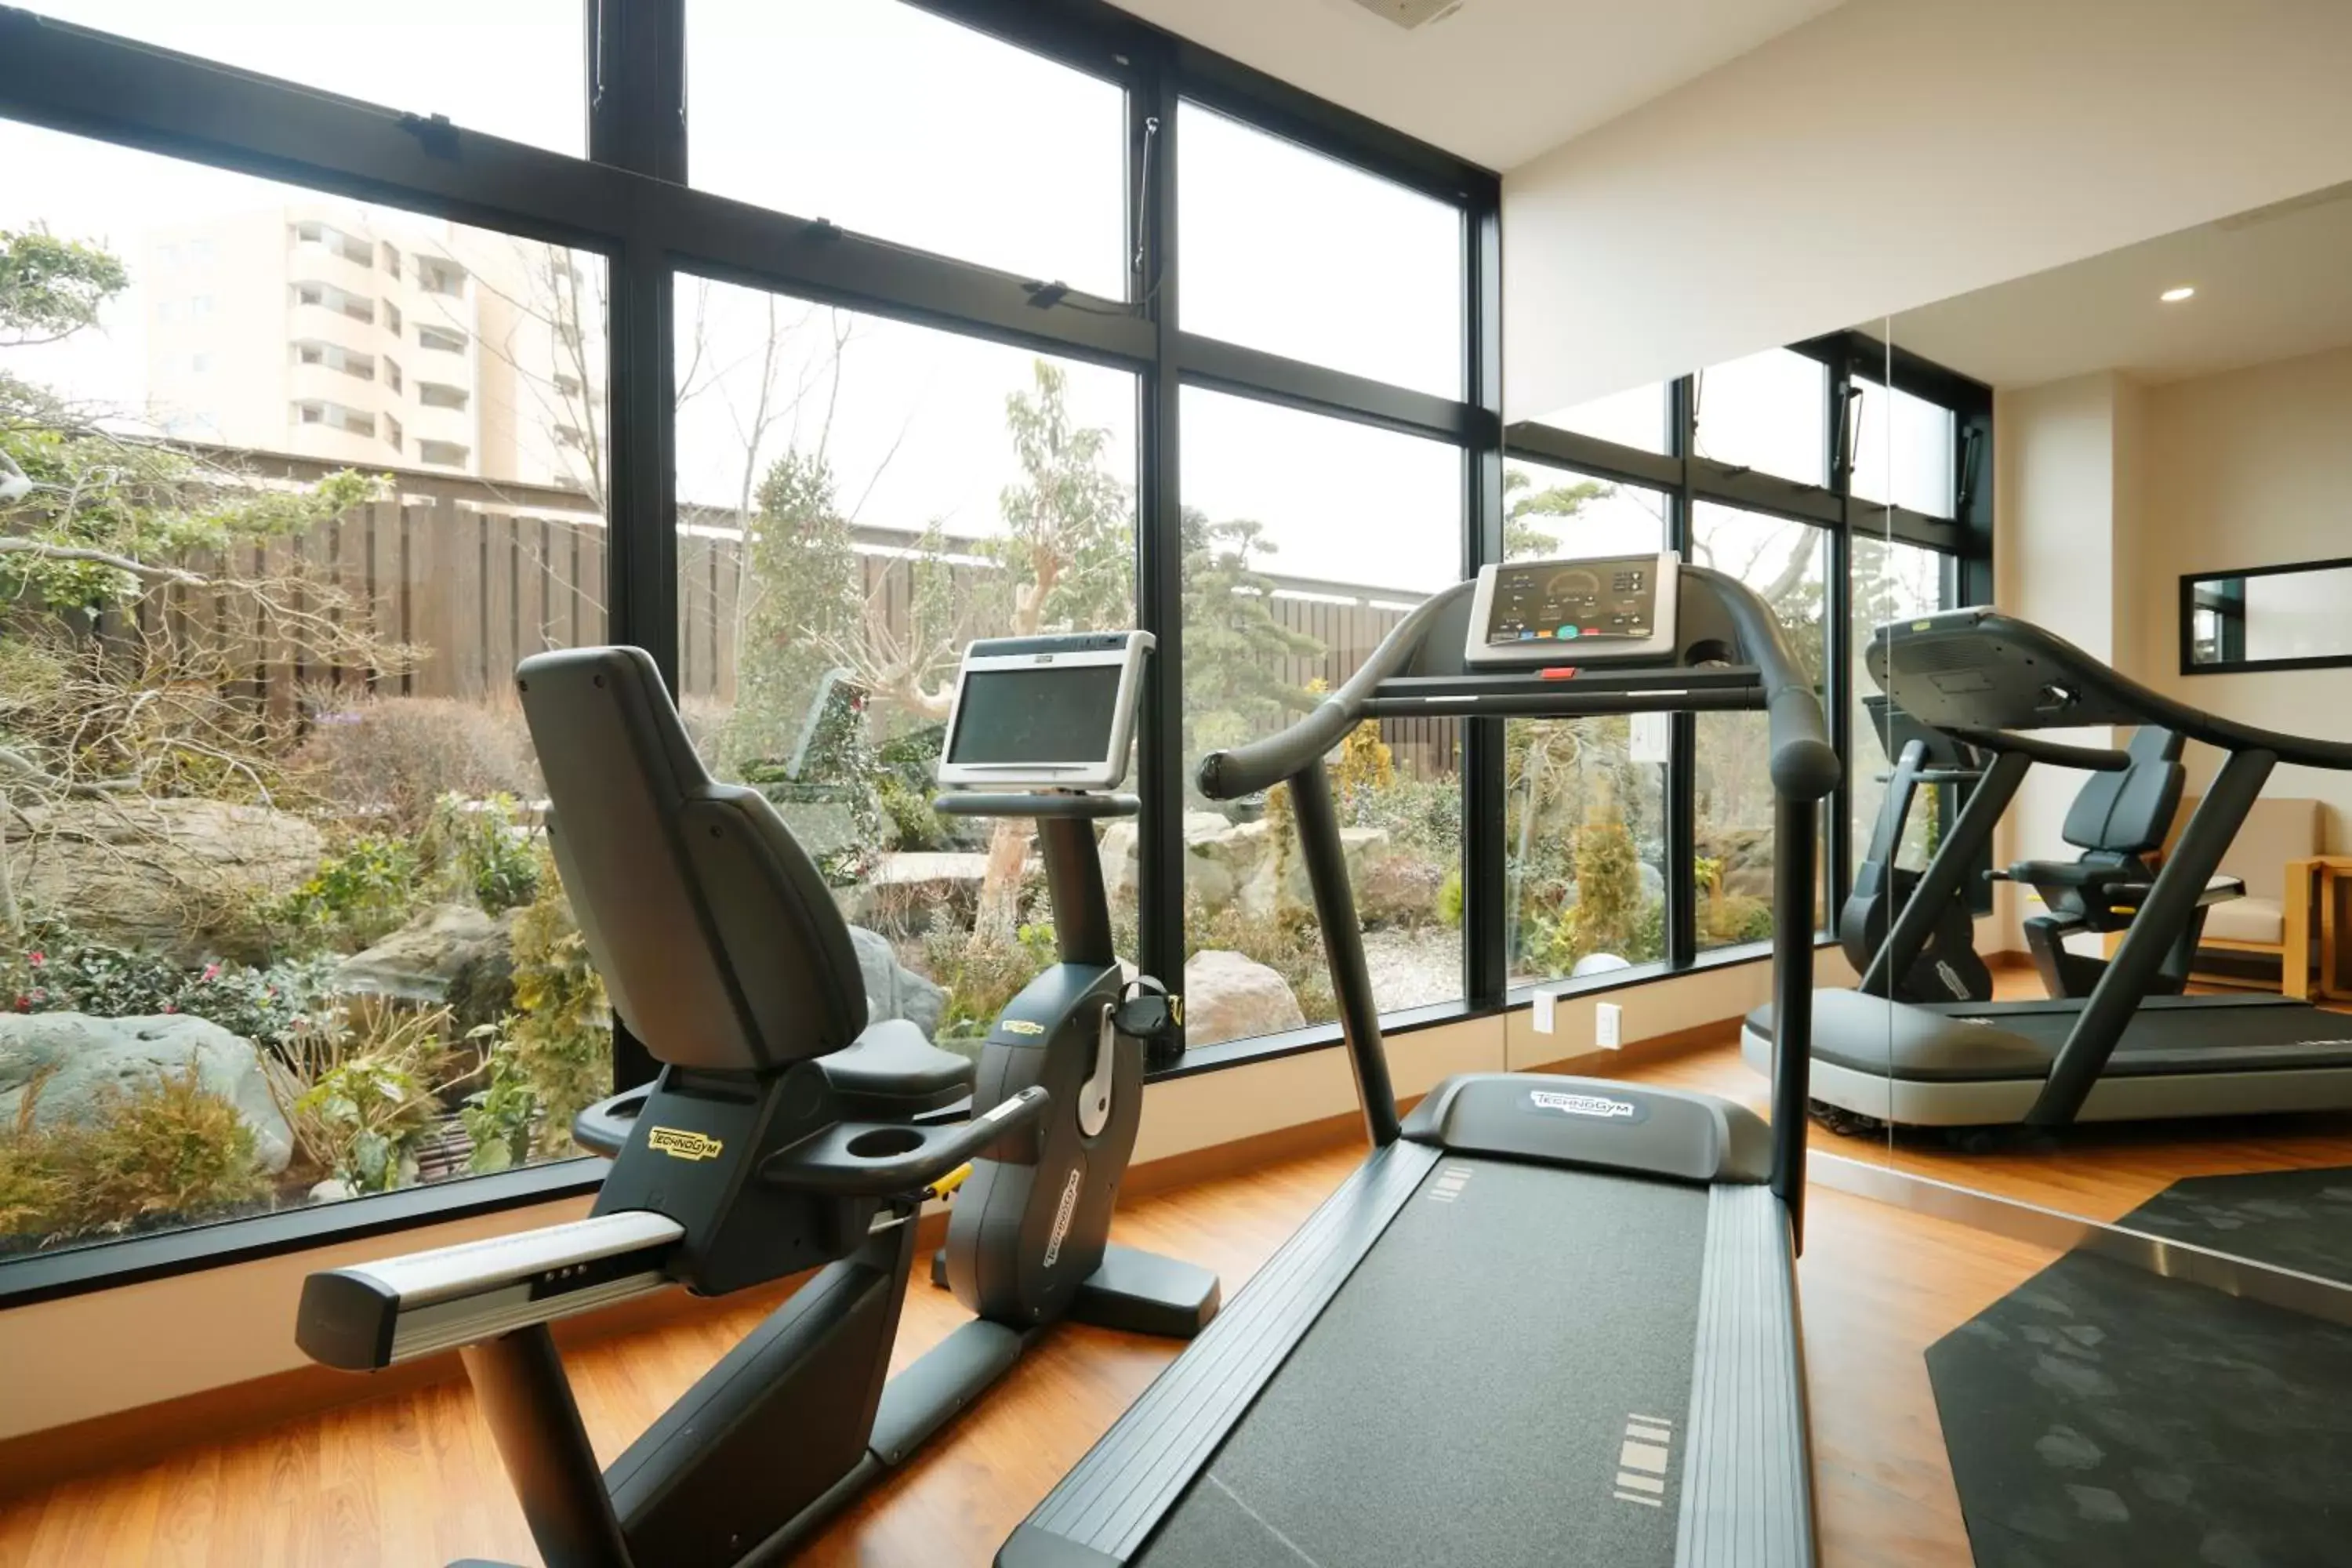 Fitness centre/facilities, Fitness Center/Facilities in Kanazawa Sainoniwa Hotel